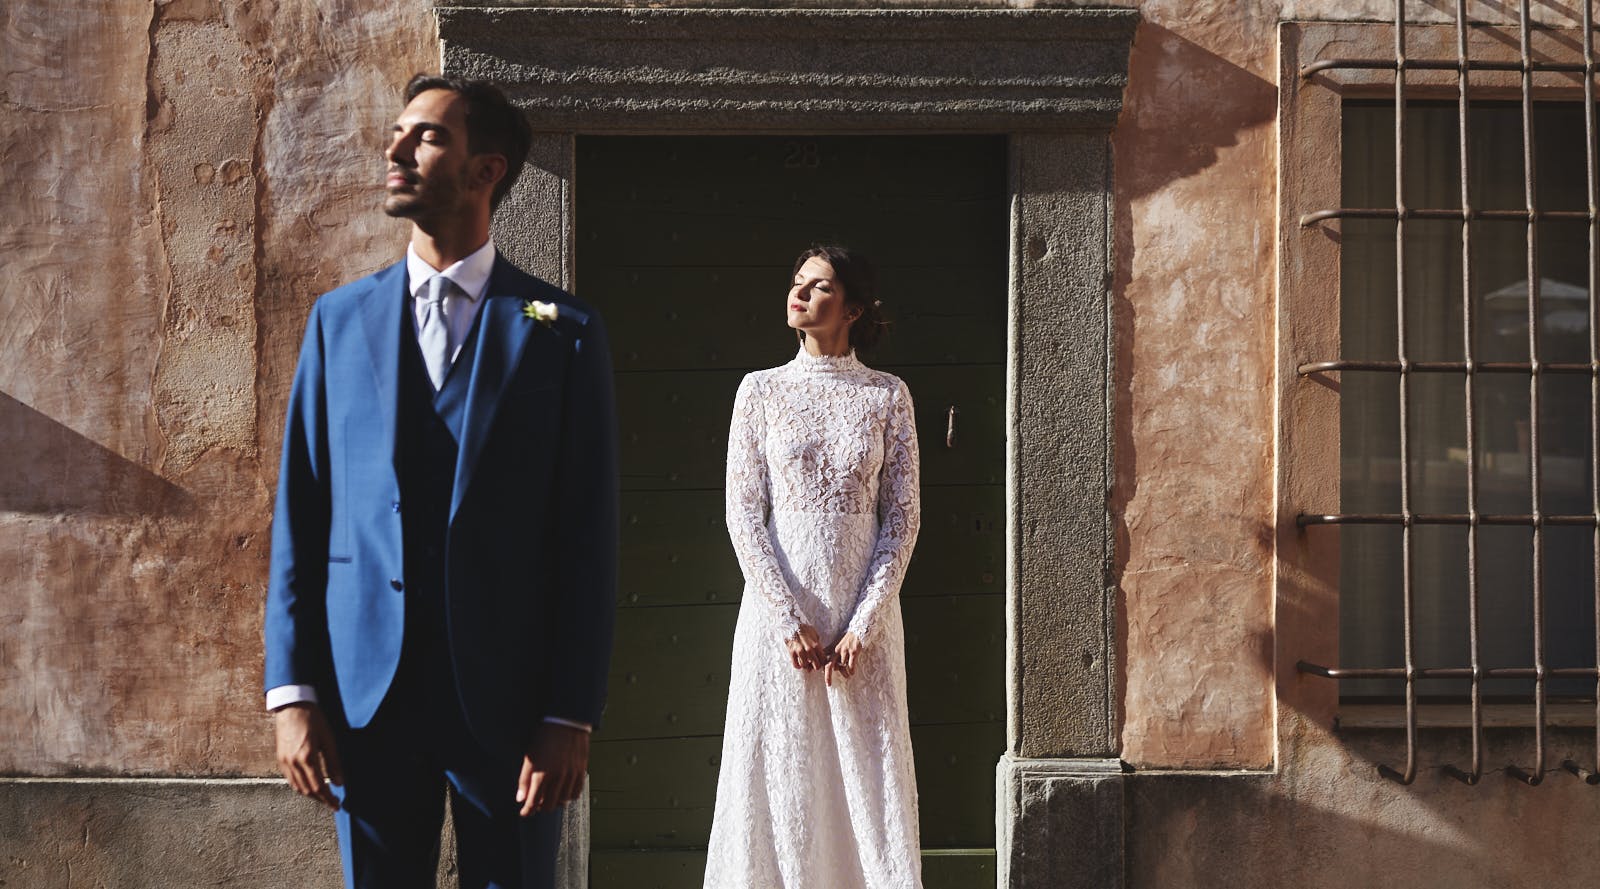 sposo e sposa che guardano verso il sole vestiti da sposi davanti a edificio antico italiano